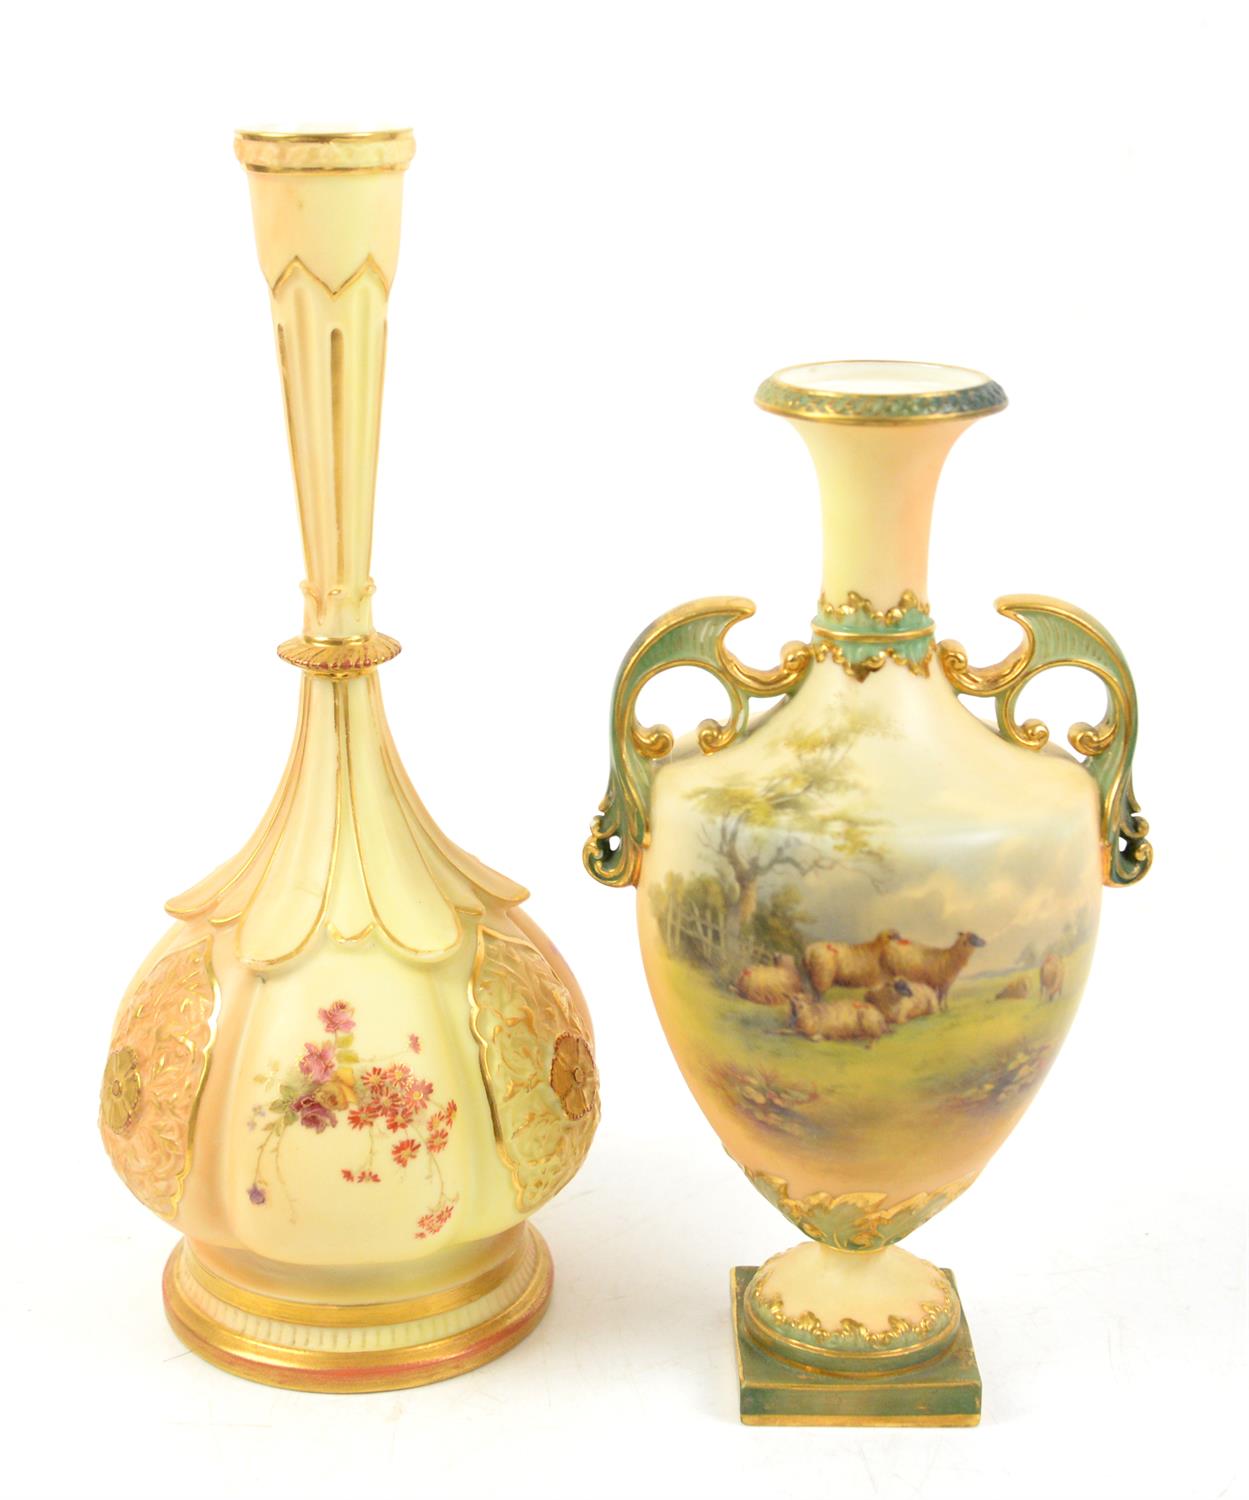 Royal Worcester blush ivory porcelain bottle vases, shape number 859 and a Royal China Works